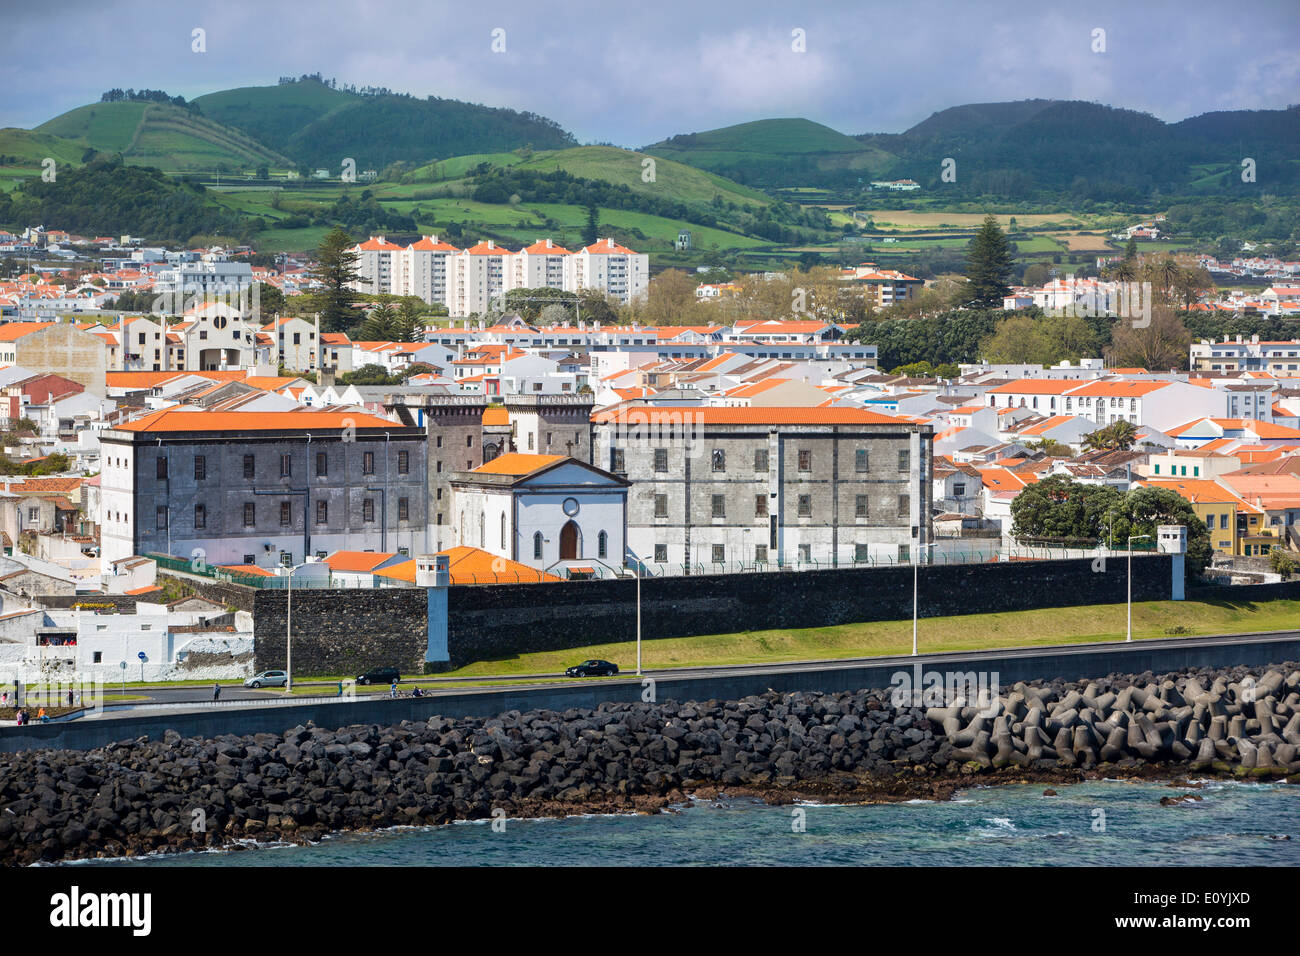 La prison et la ville de Ponta Delgada sur l'île de São Miguel, Açores, Portugal Banque D'Images